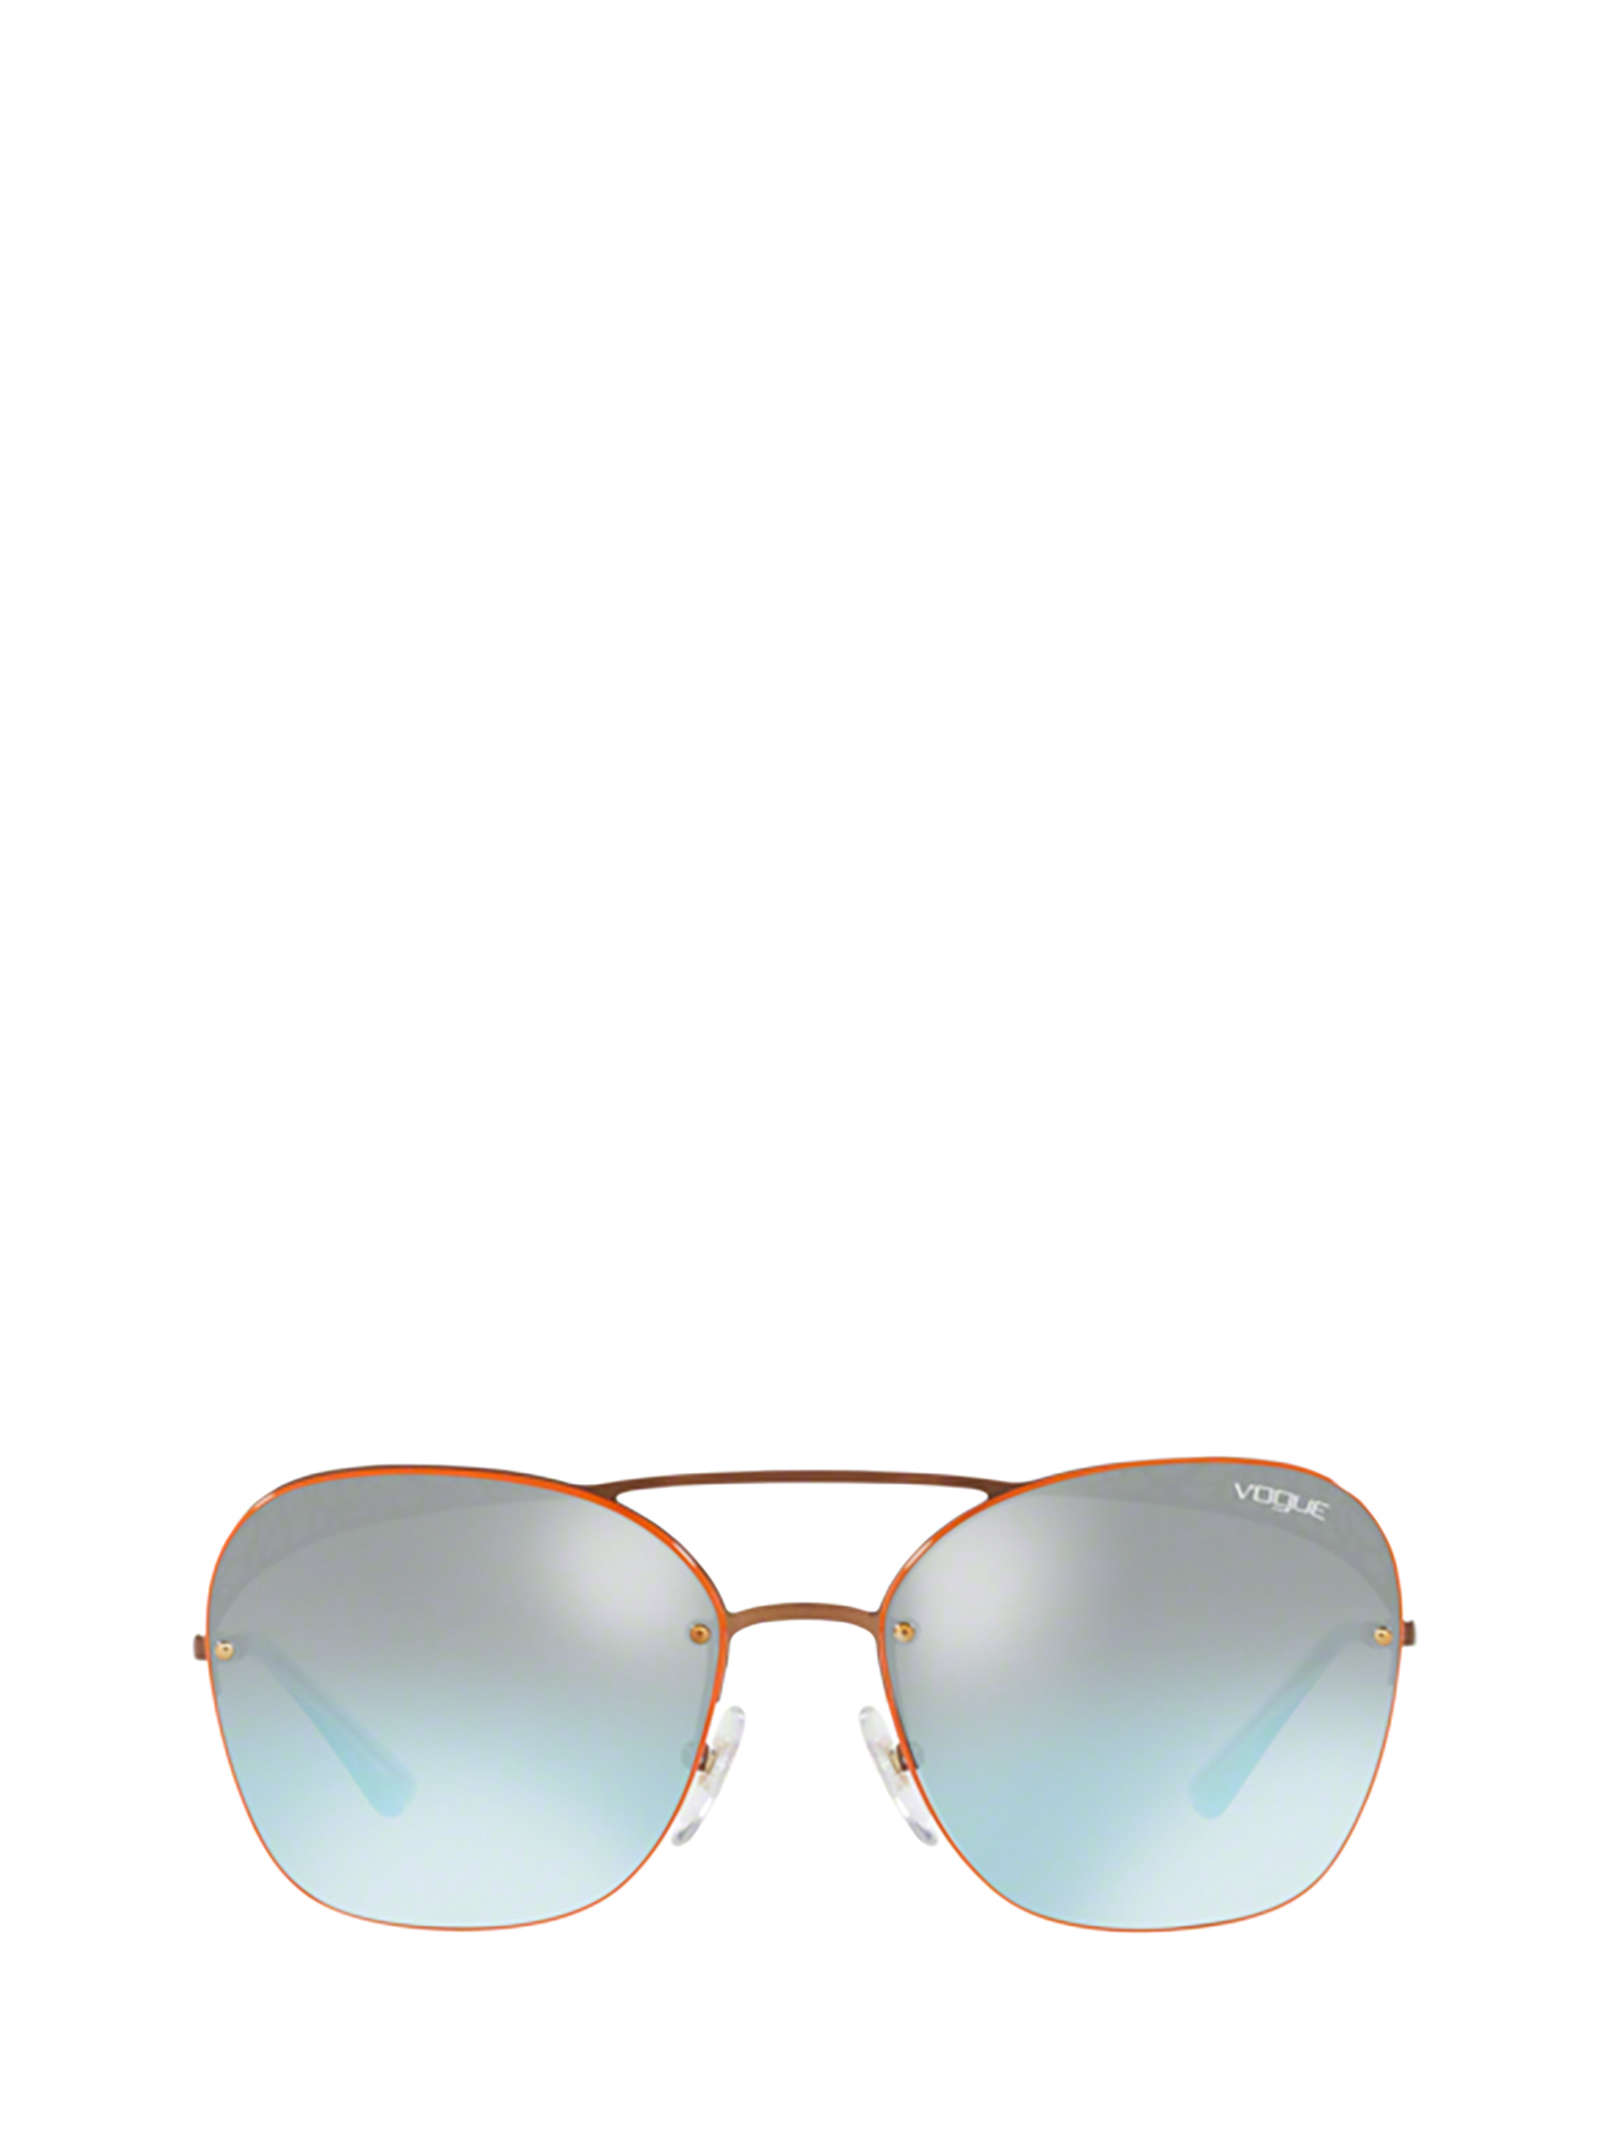 Vogue Eyewear Vogue Vo4104s Copper Sunglasses